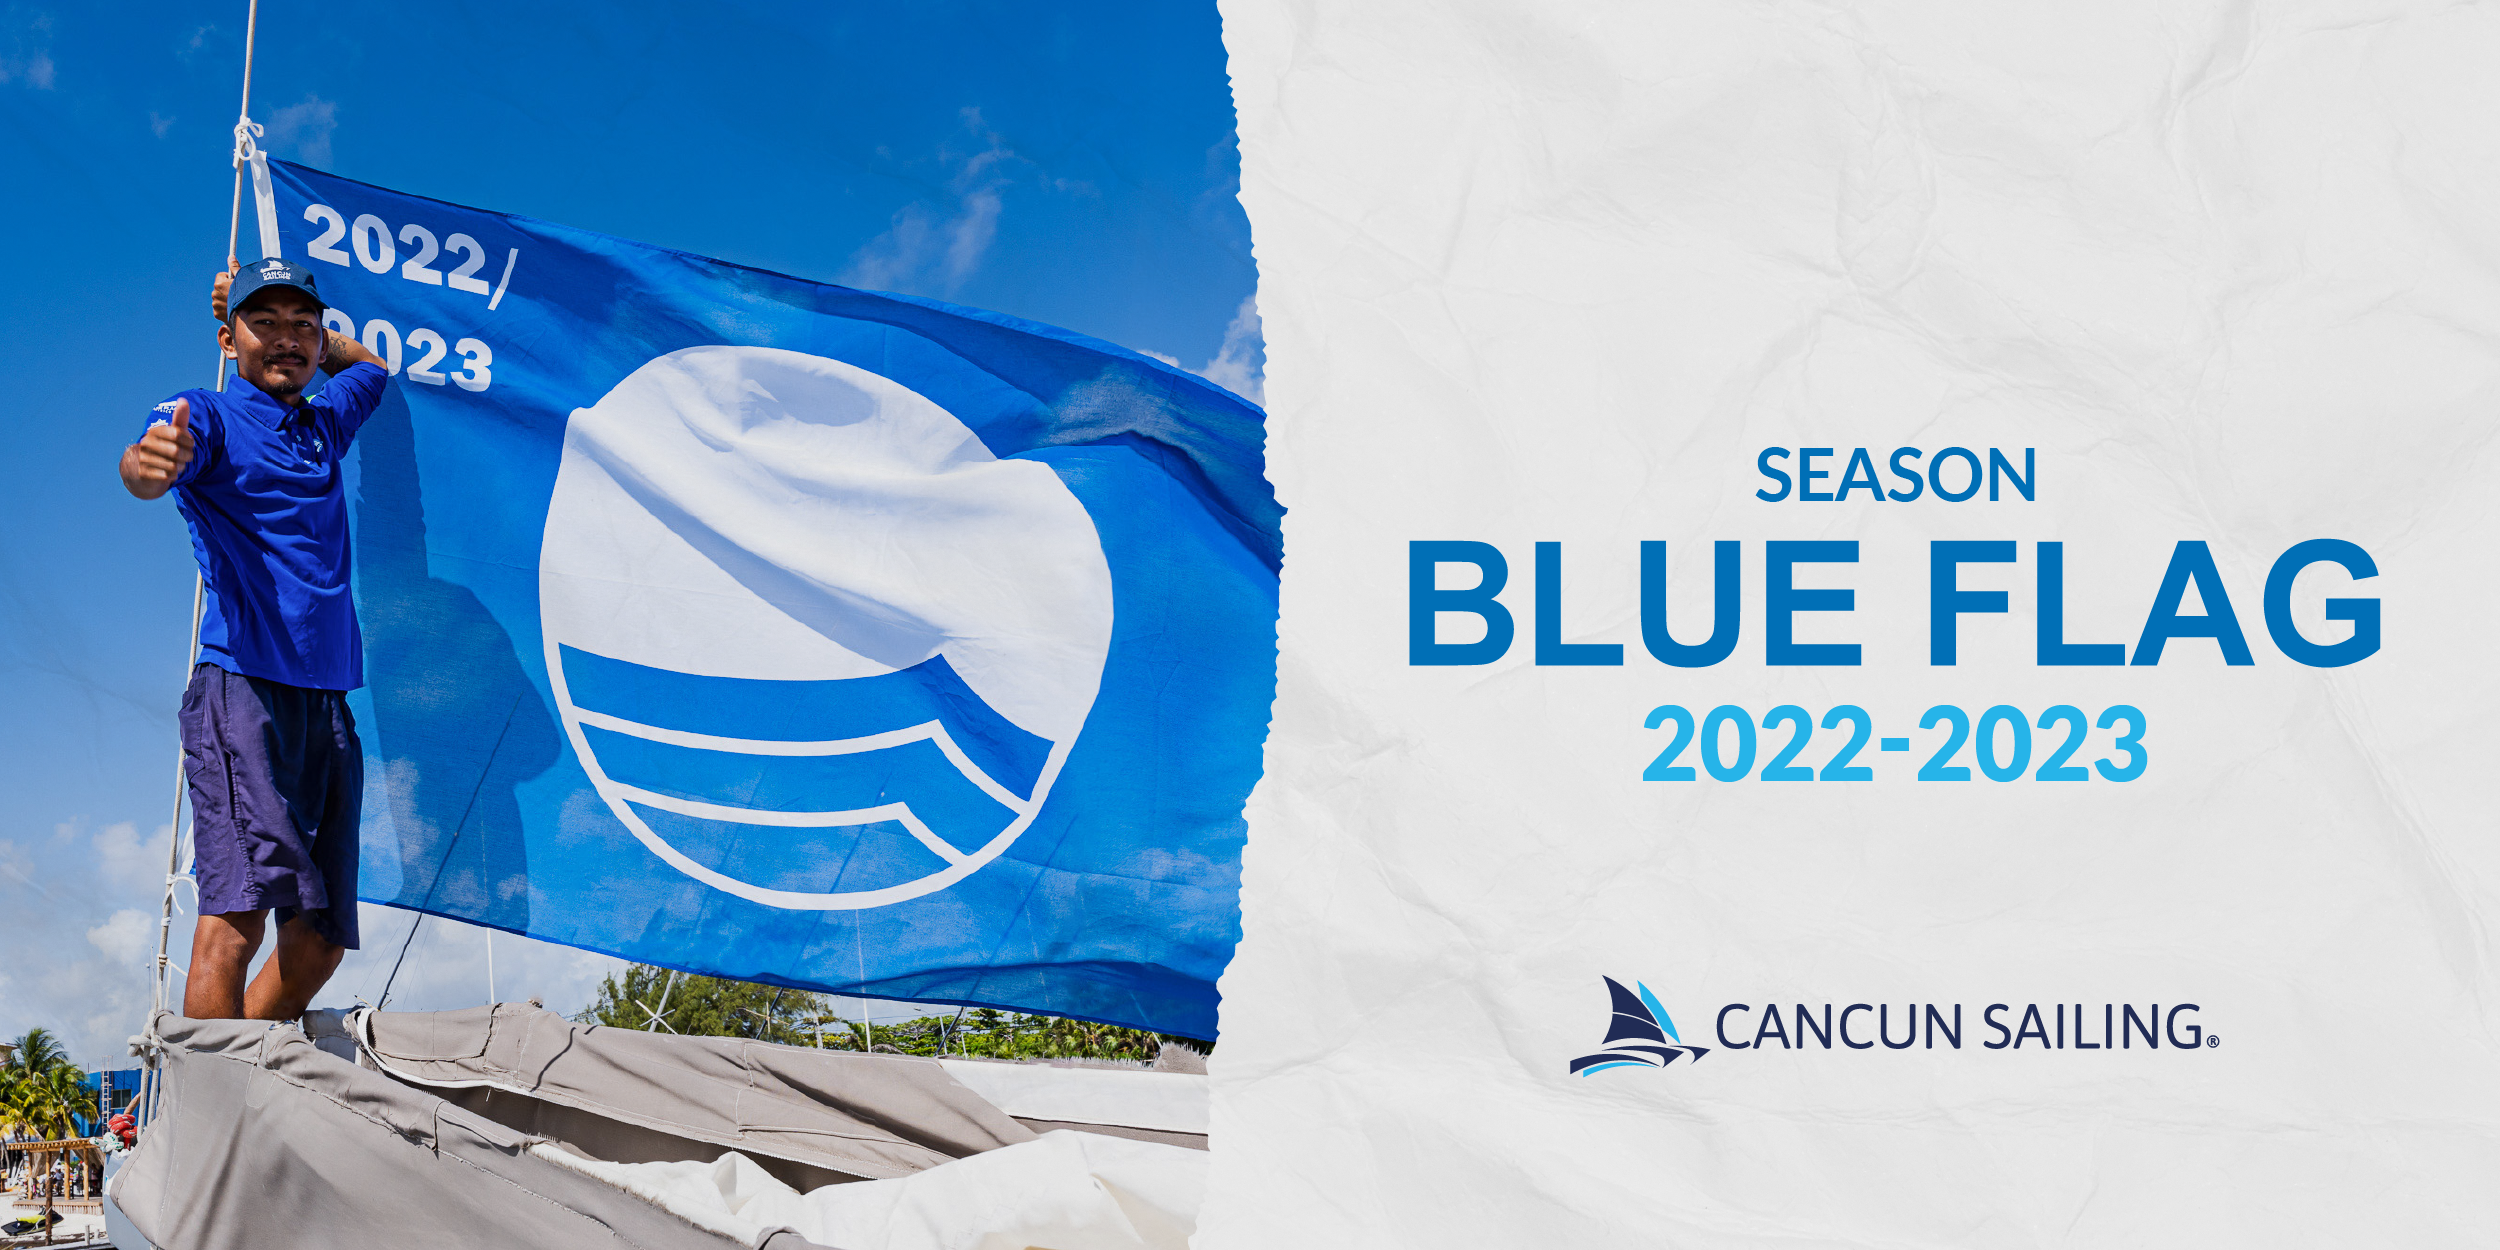 Blue Flag 2022-2023 Season Cancun Sailing